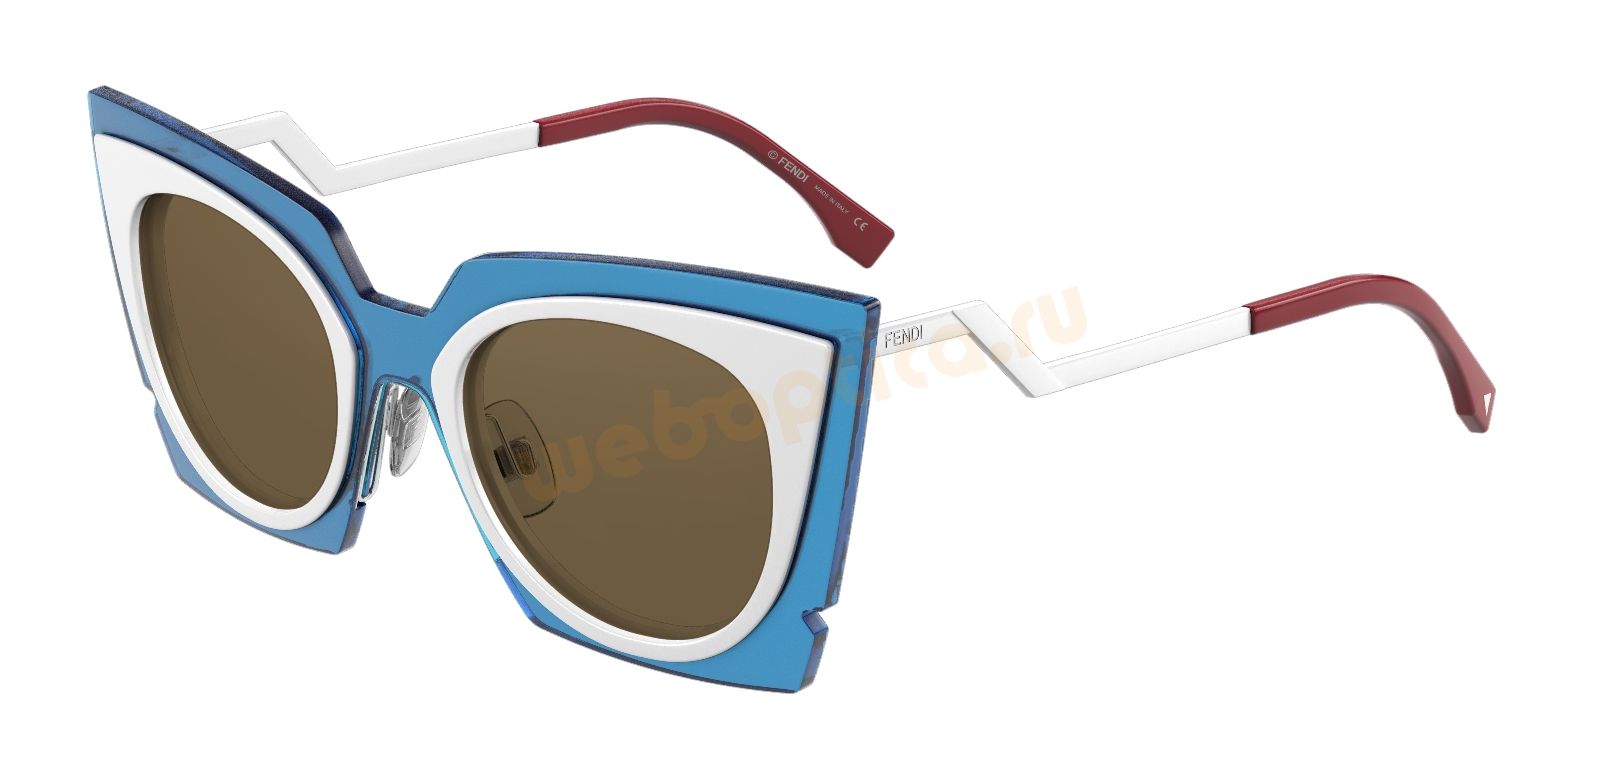 Солнцезащитные очки FENDI FF 0117S IC4 купить в Москве, цена, интернет магазин